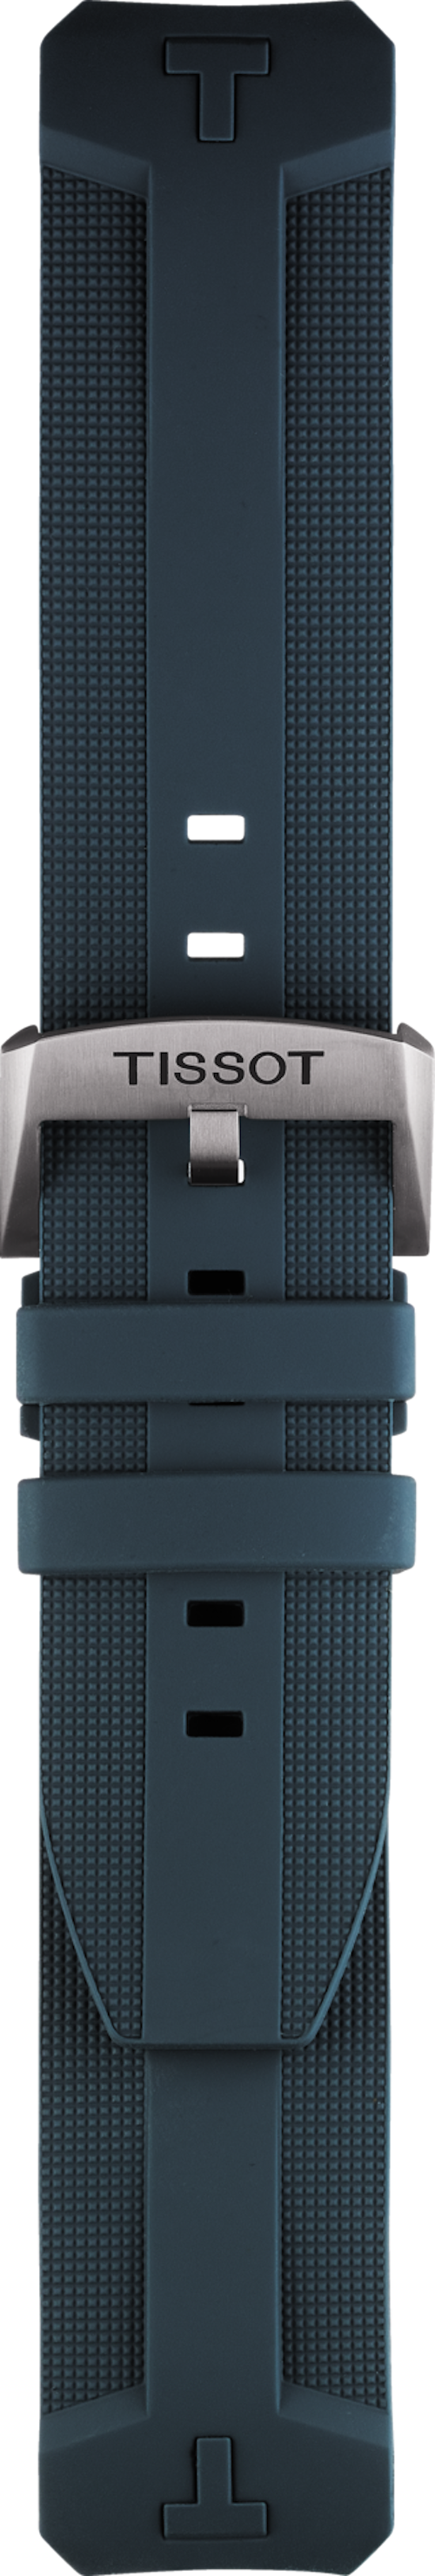 Tissot-Watch-Bands